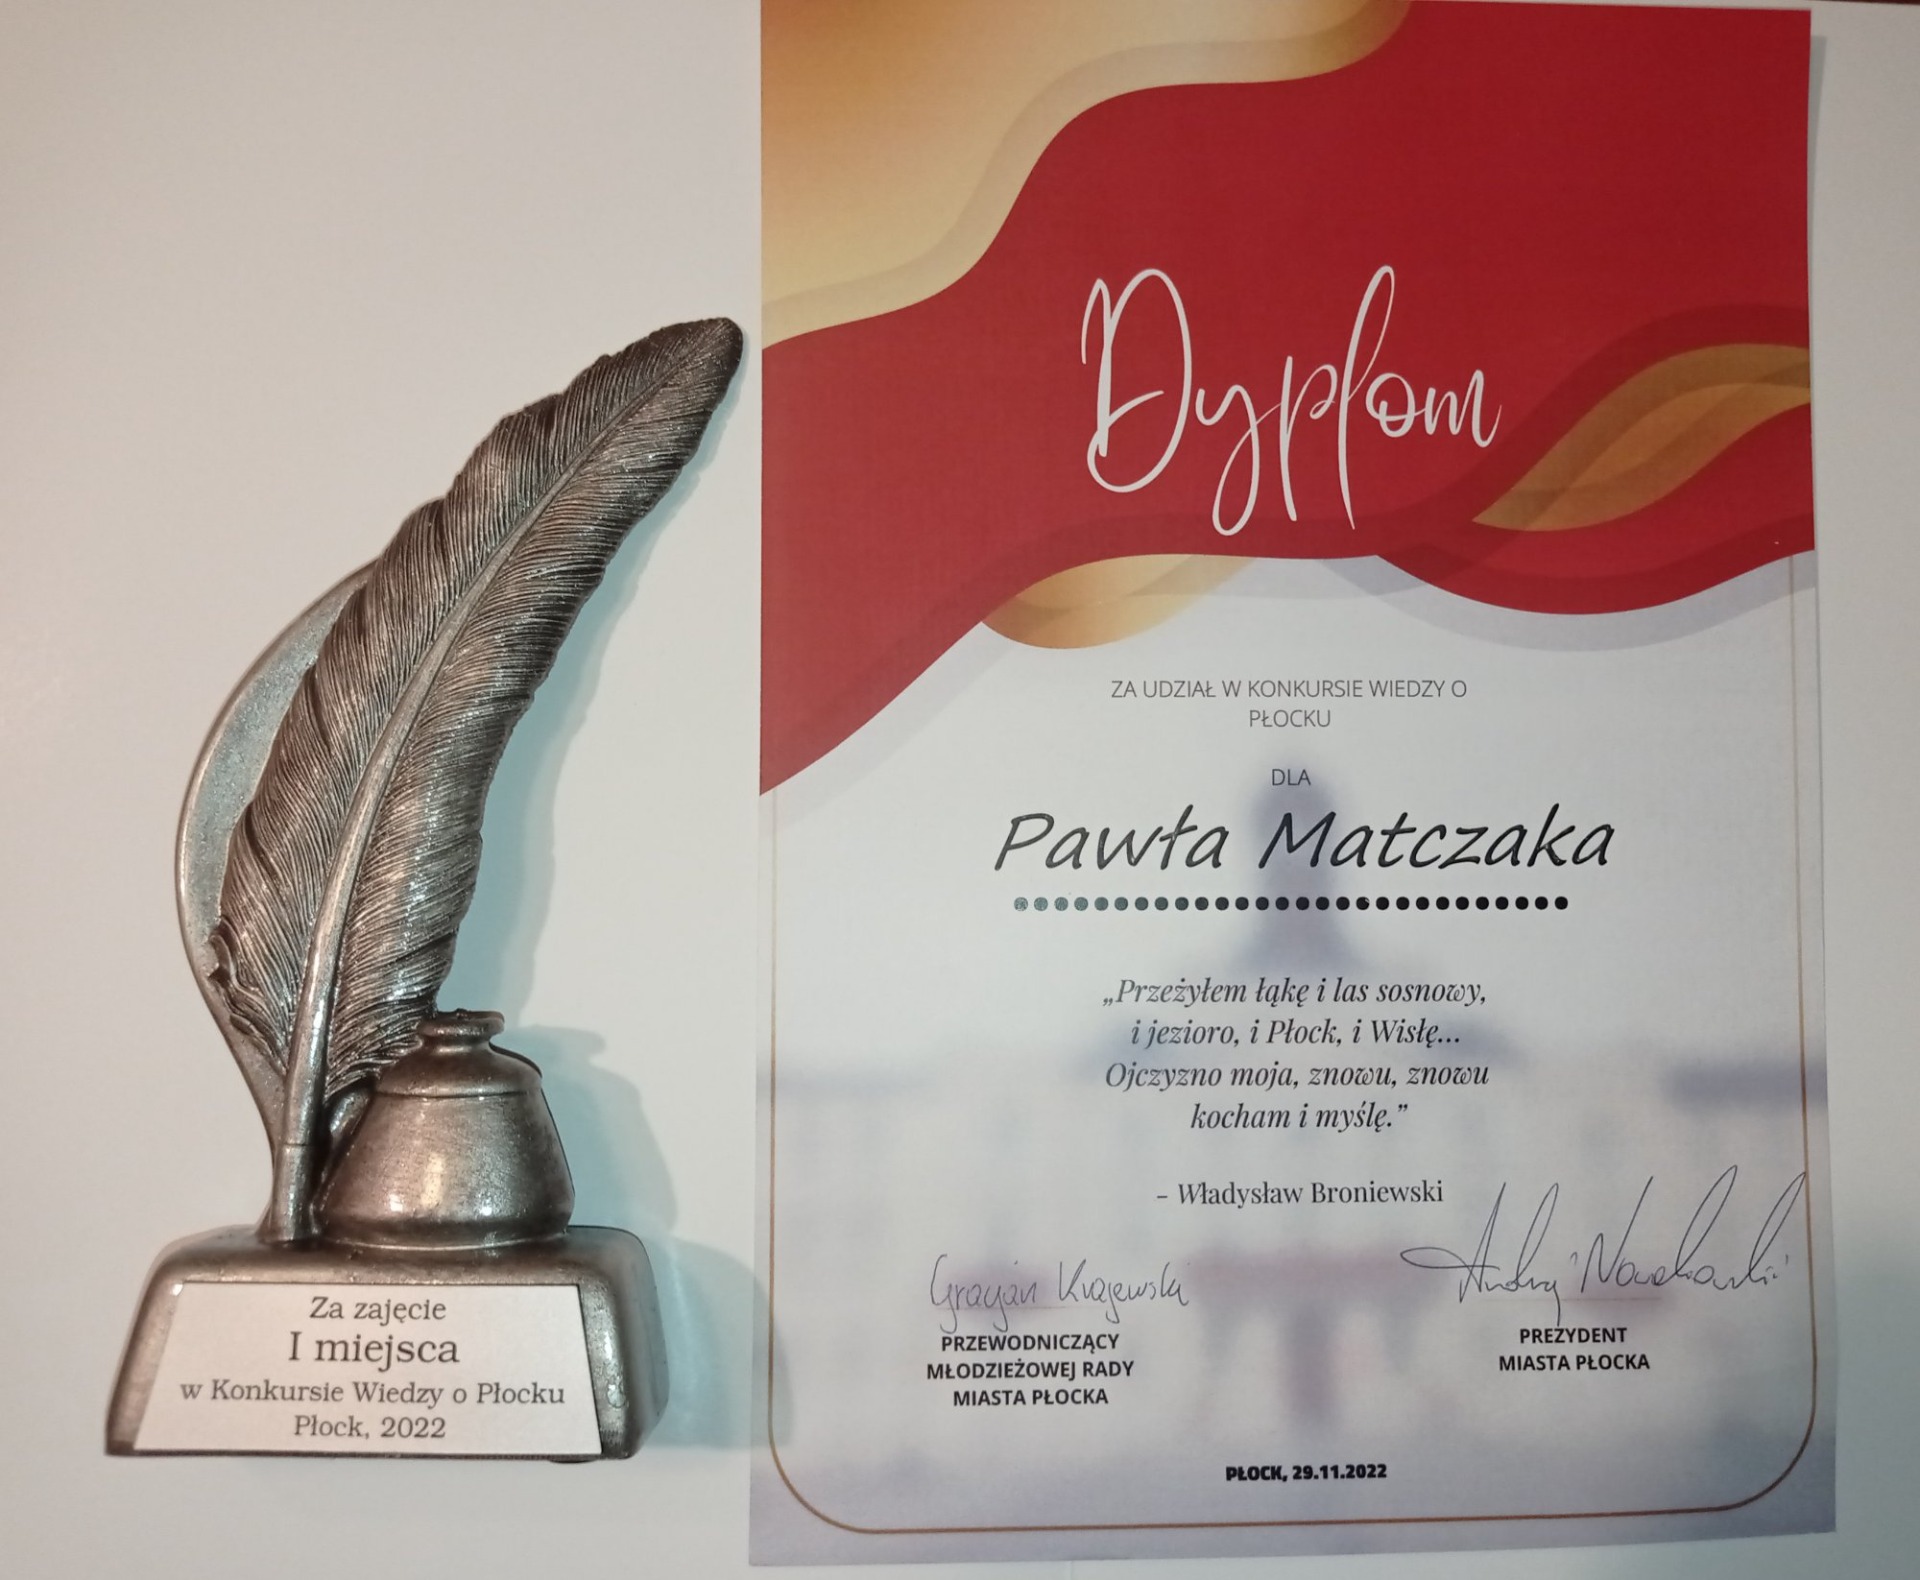 Statua za zajęcie pierwszego miejsca oraz dyplom za udział w konkursie wiedzy o Płocku dla Pawła Matczaka